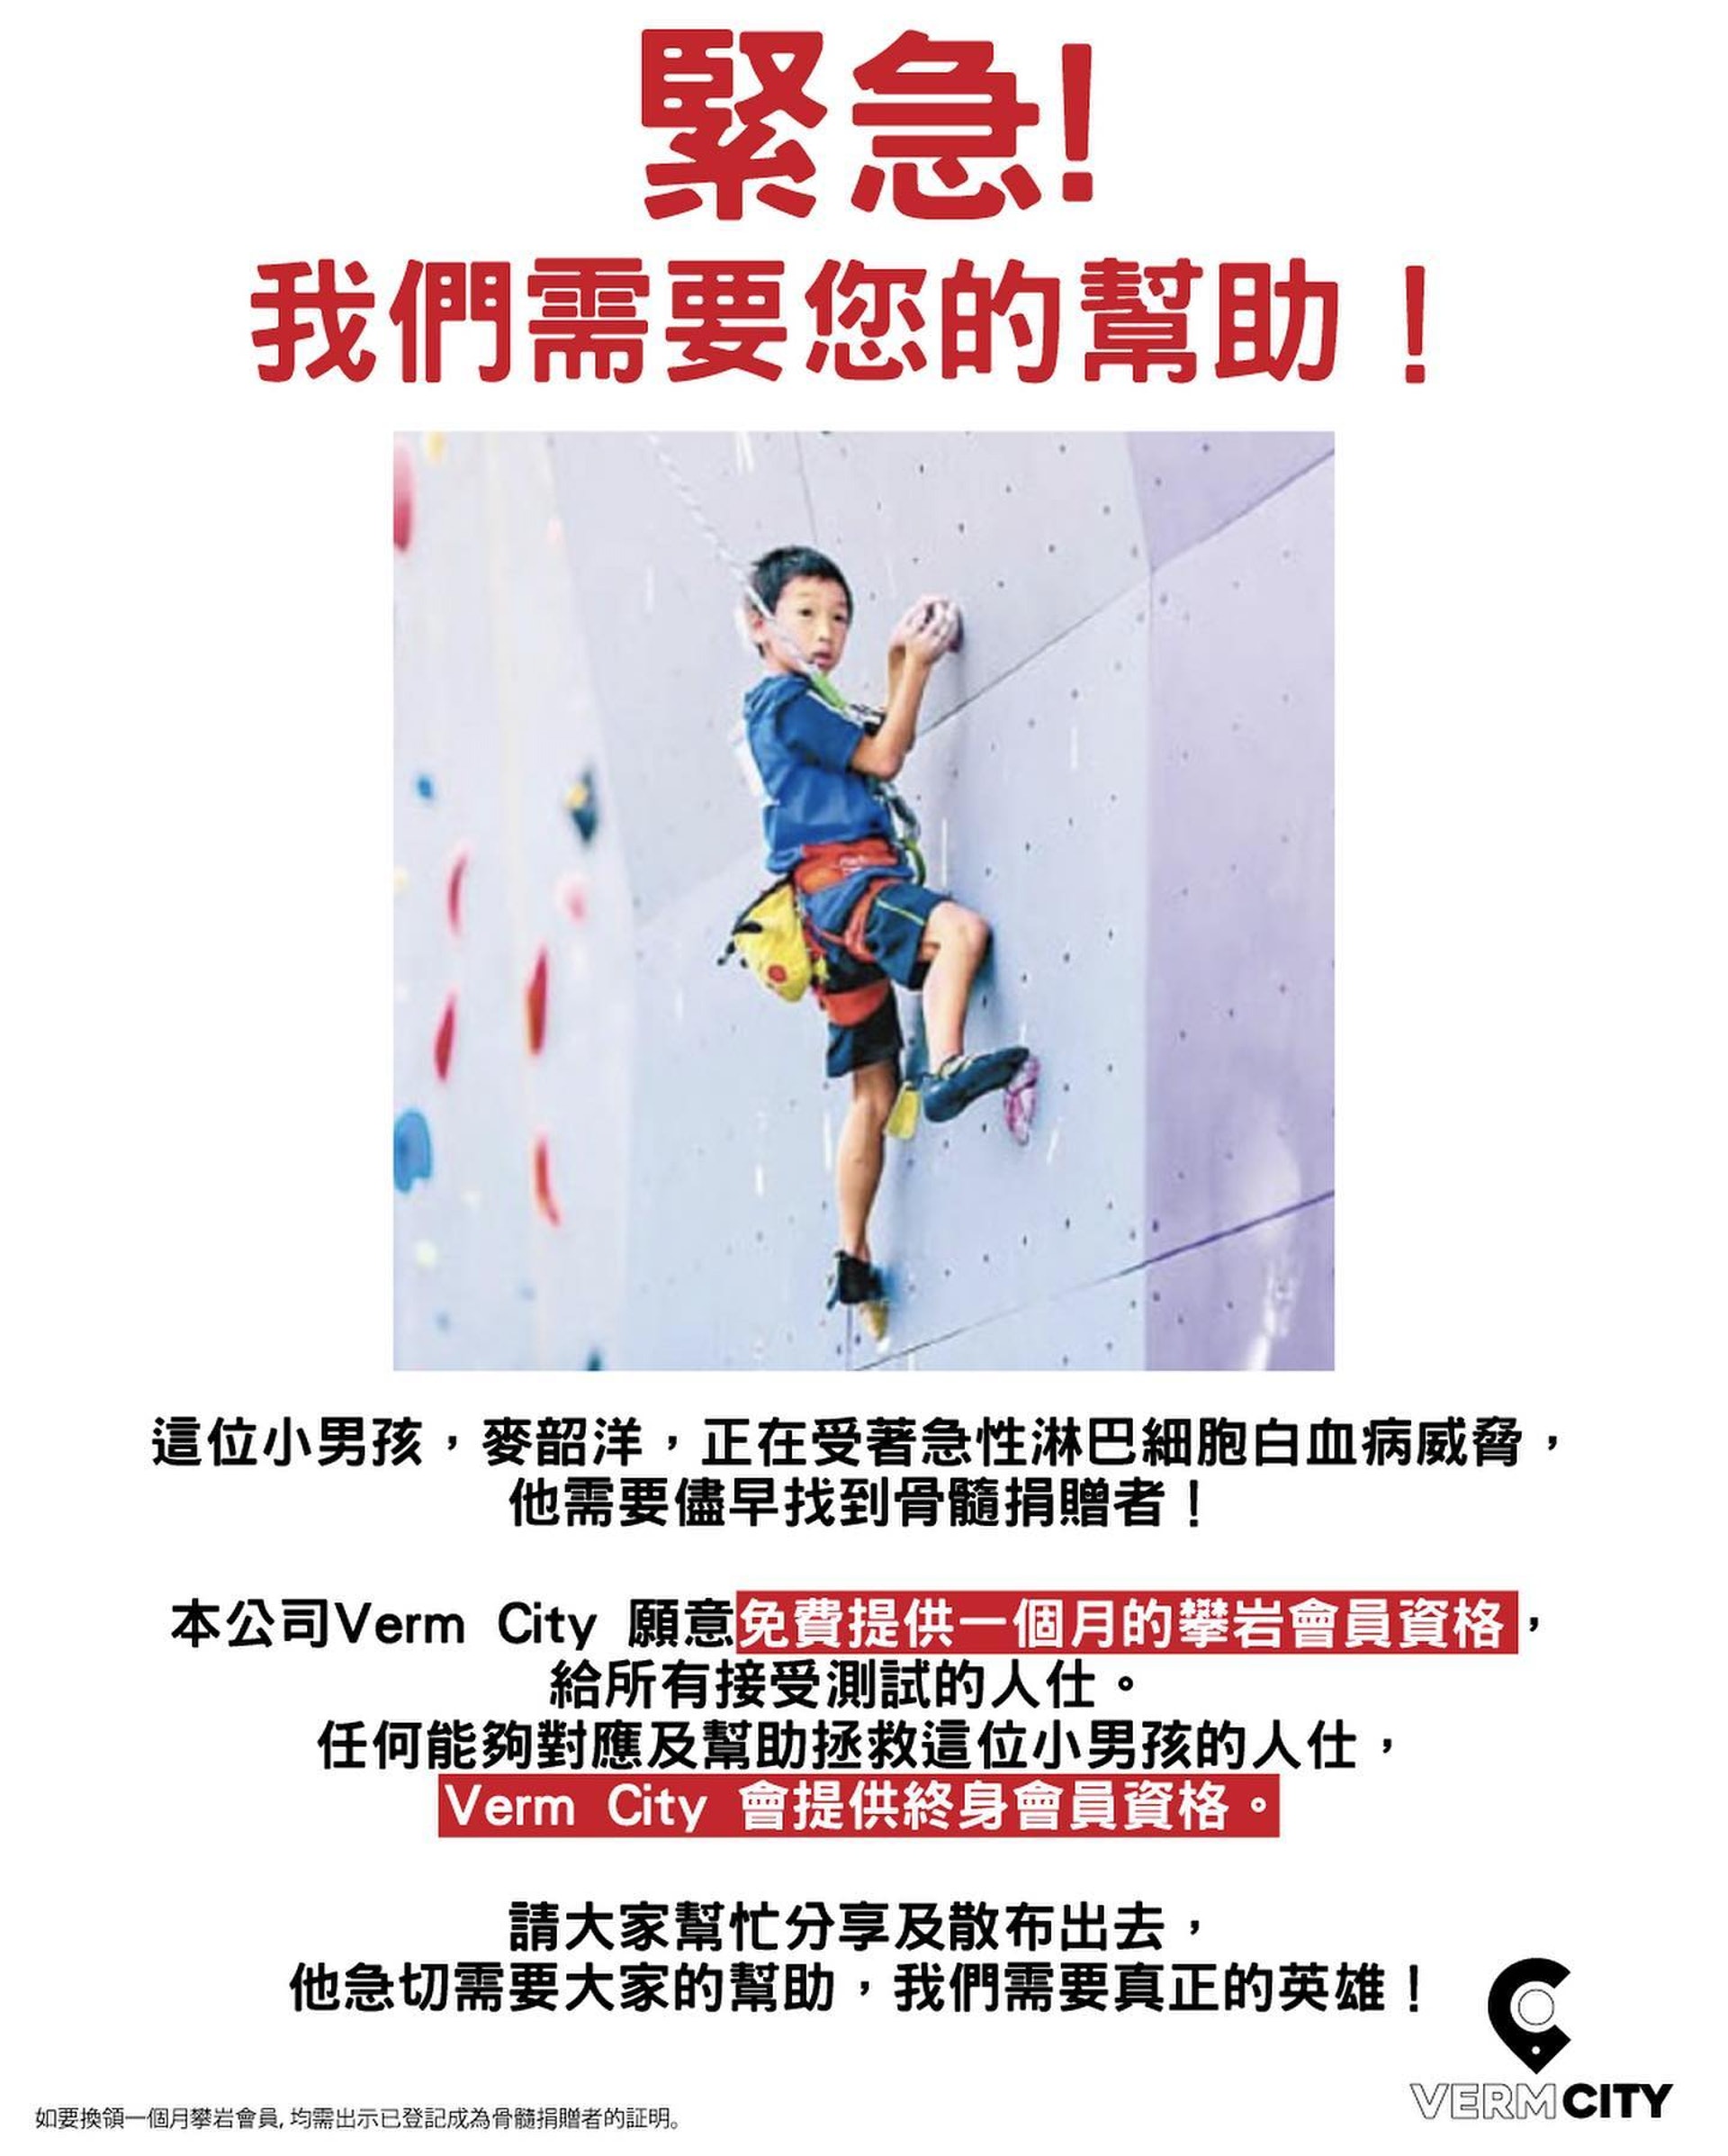 不少攀石場甚至「中國香港攀山及攀登總會」也有為韶洋出一分力，幫忙宣傳捐骨髓血液行動